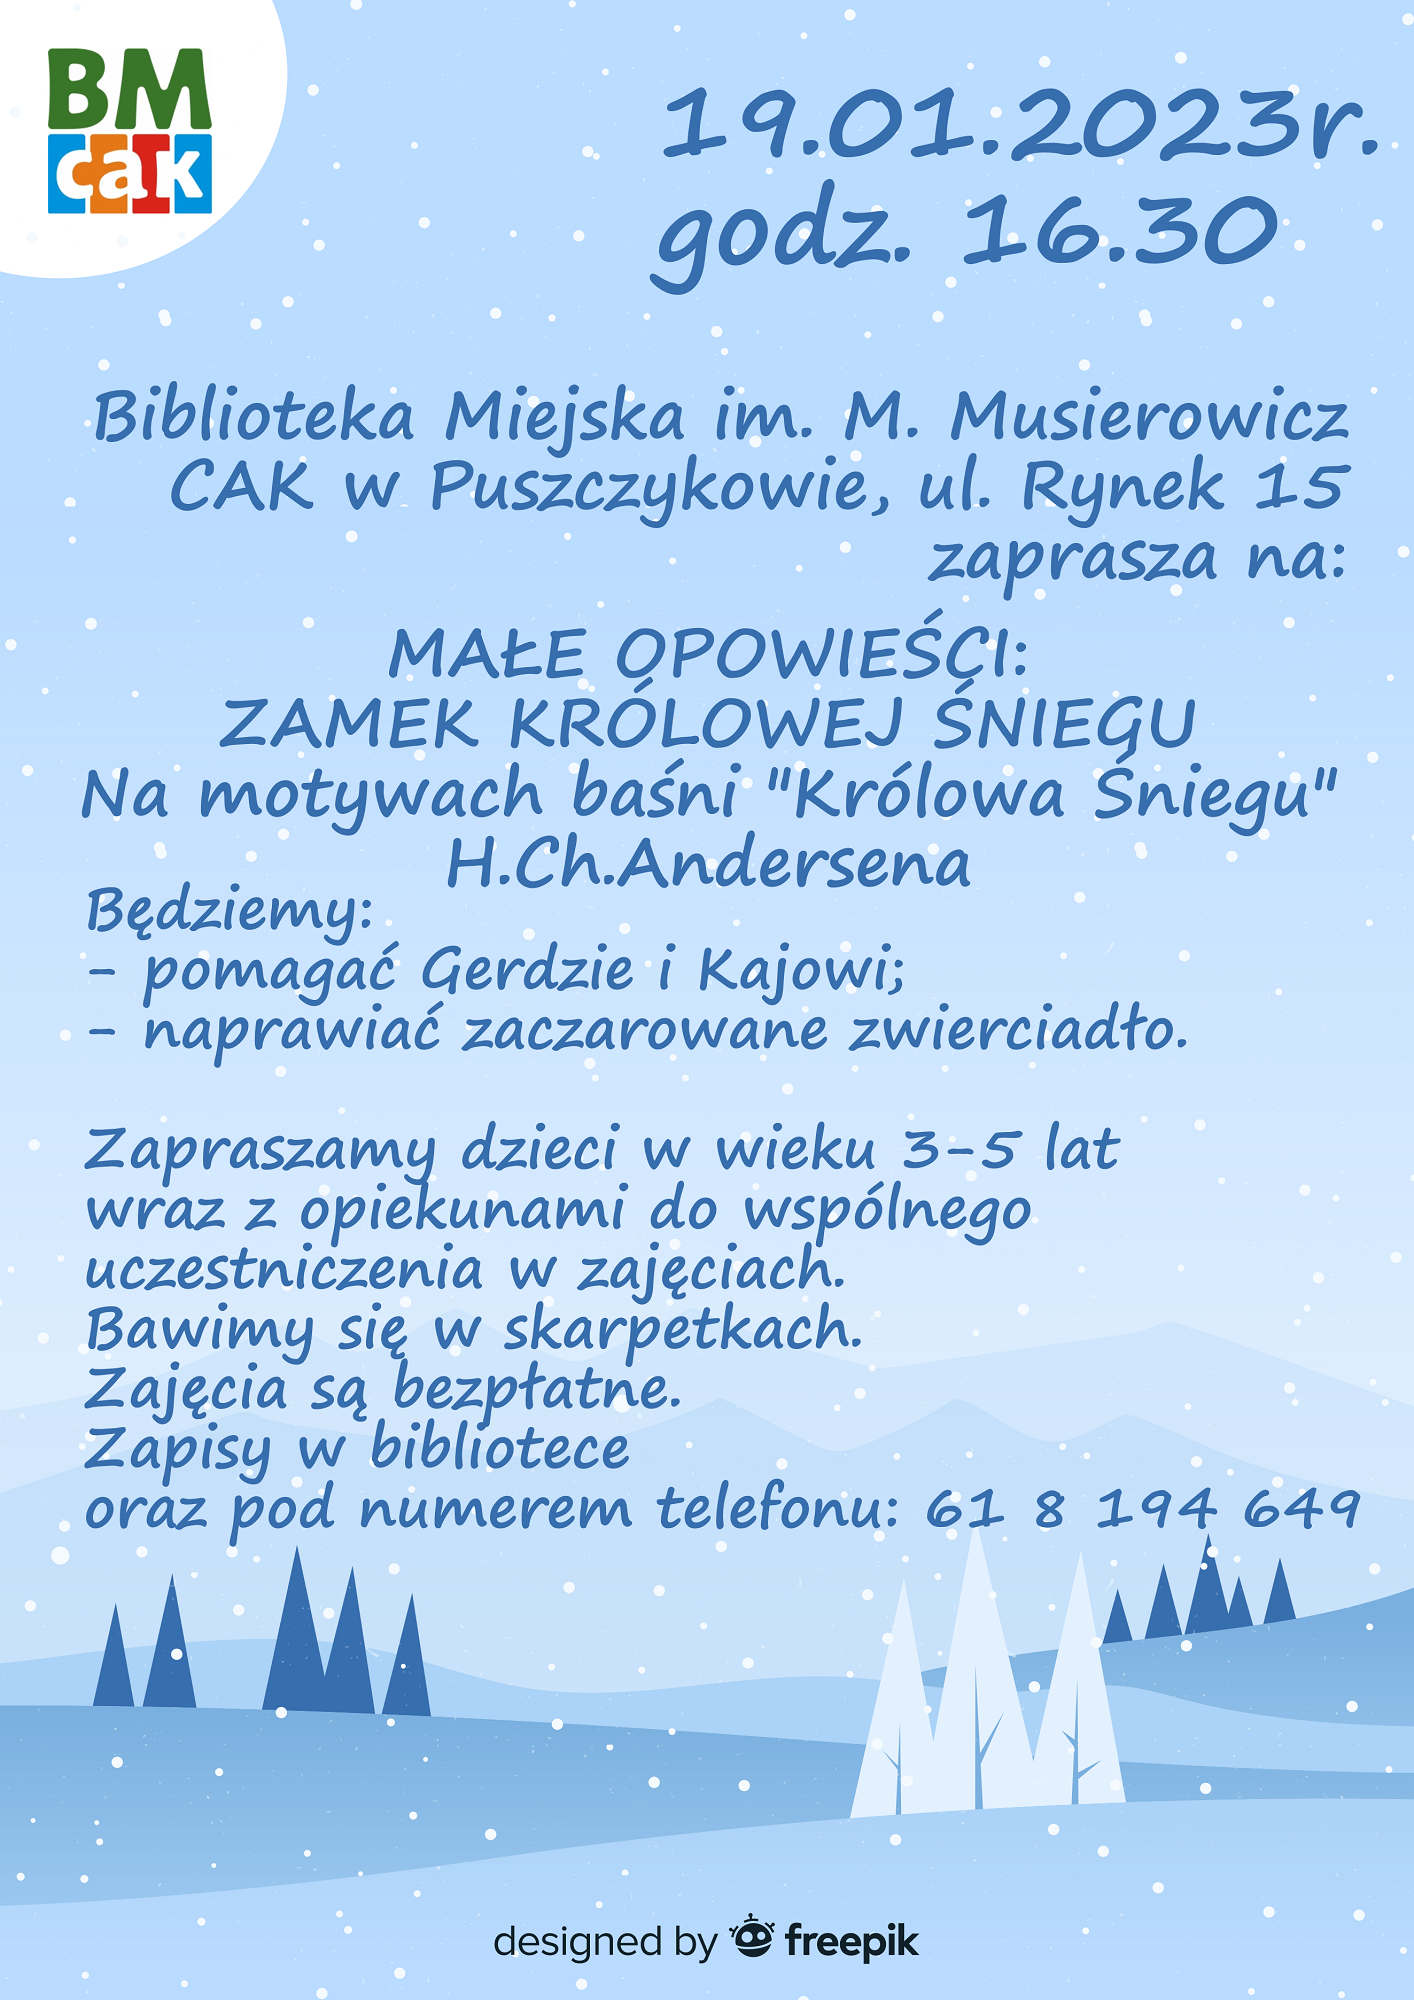 Biblioteka Miejska w Puszczykowie zaprasza na małe opowieści: zamek Królowej Śniegu.